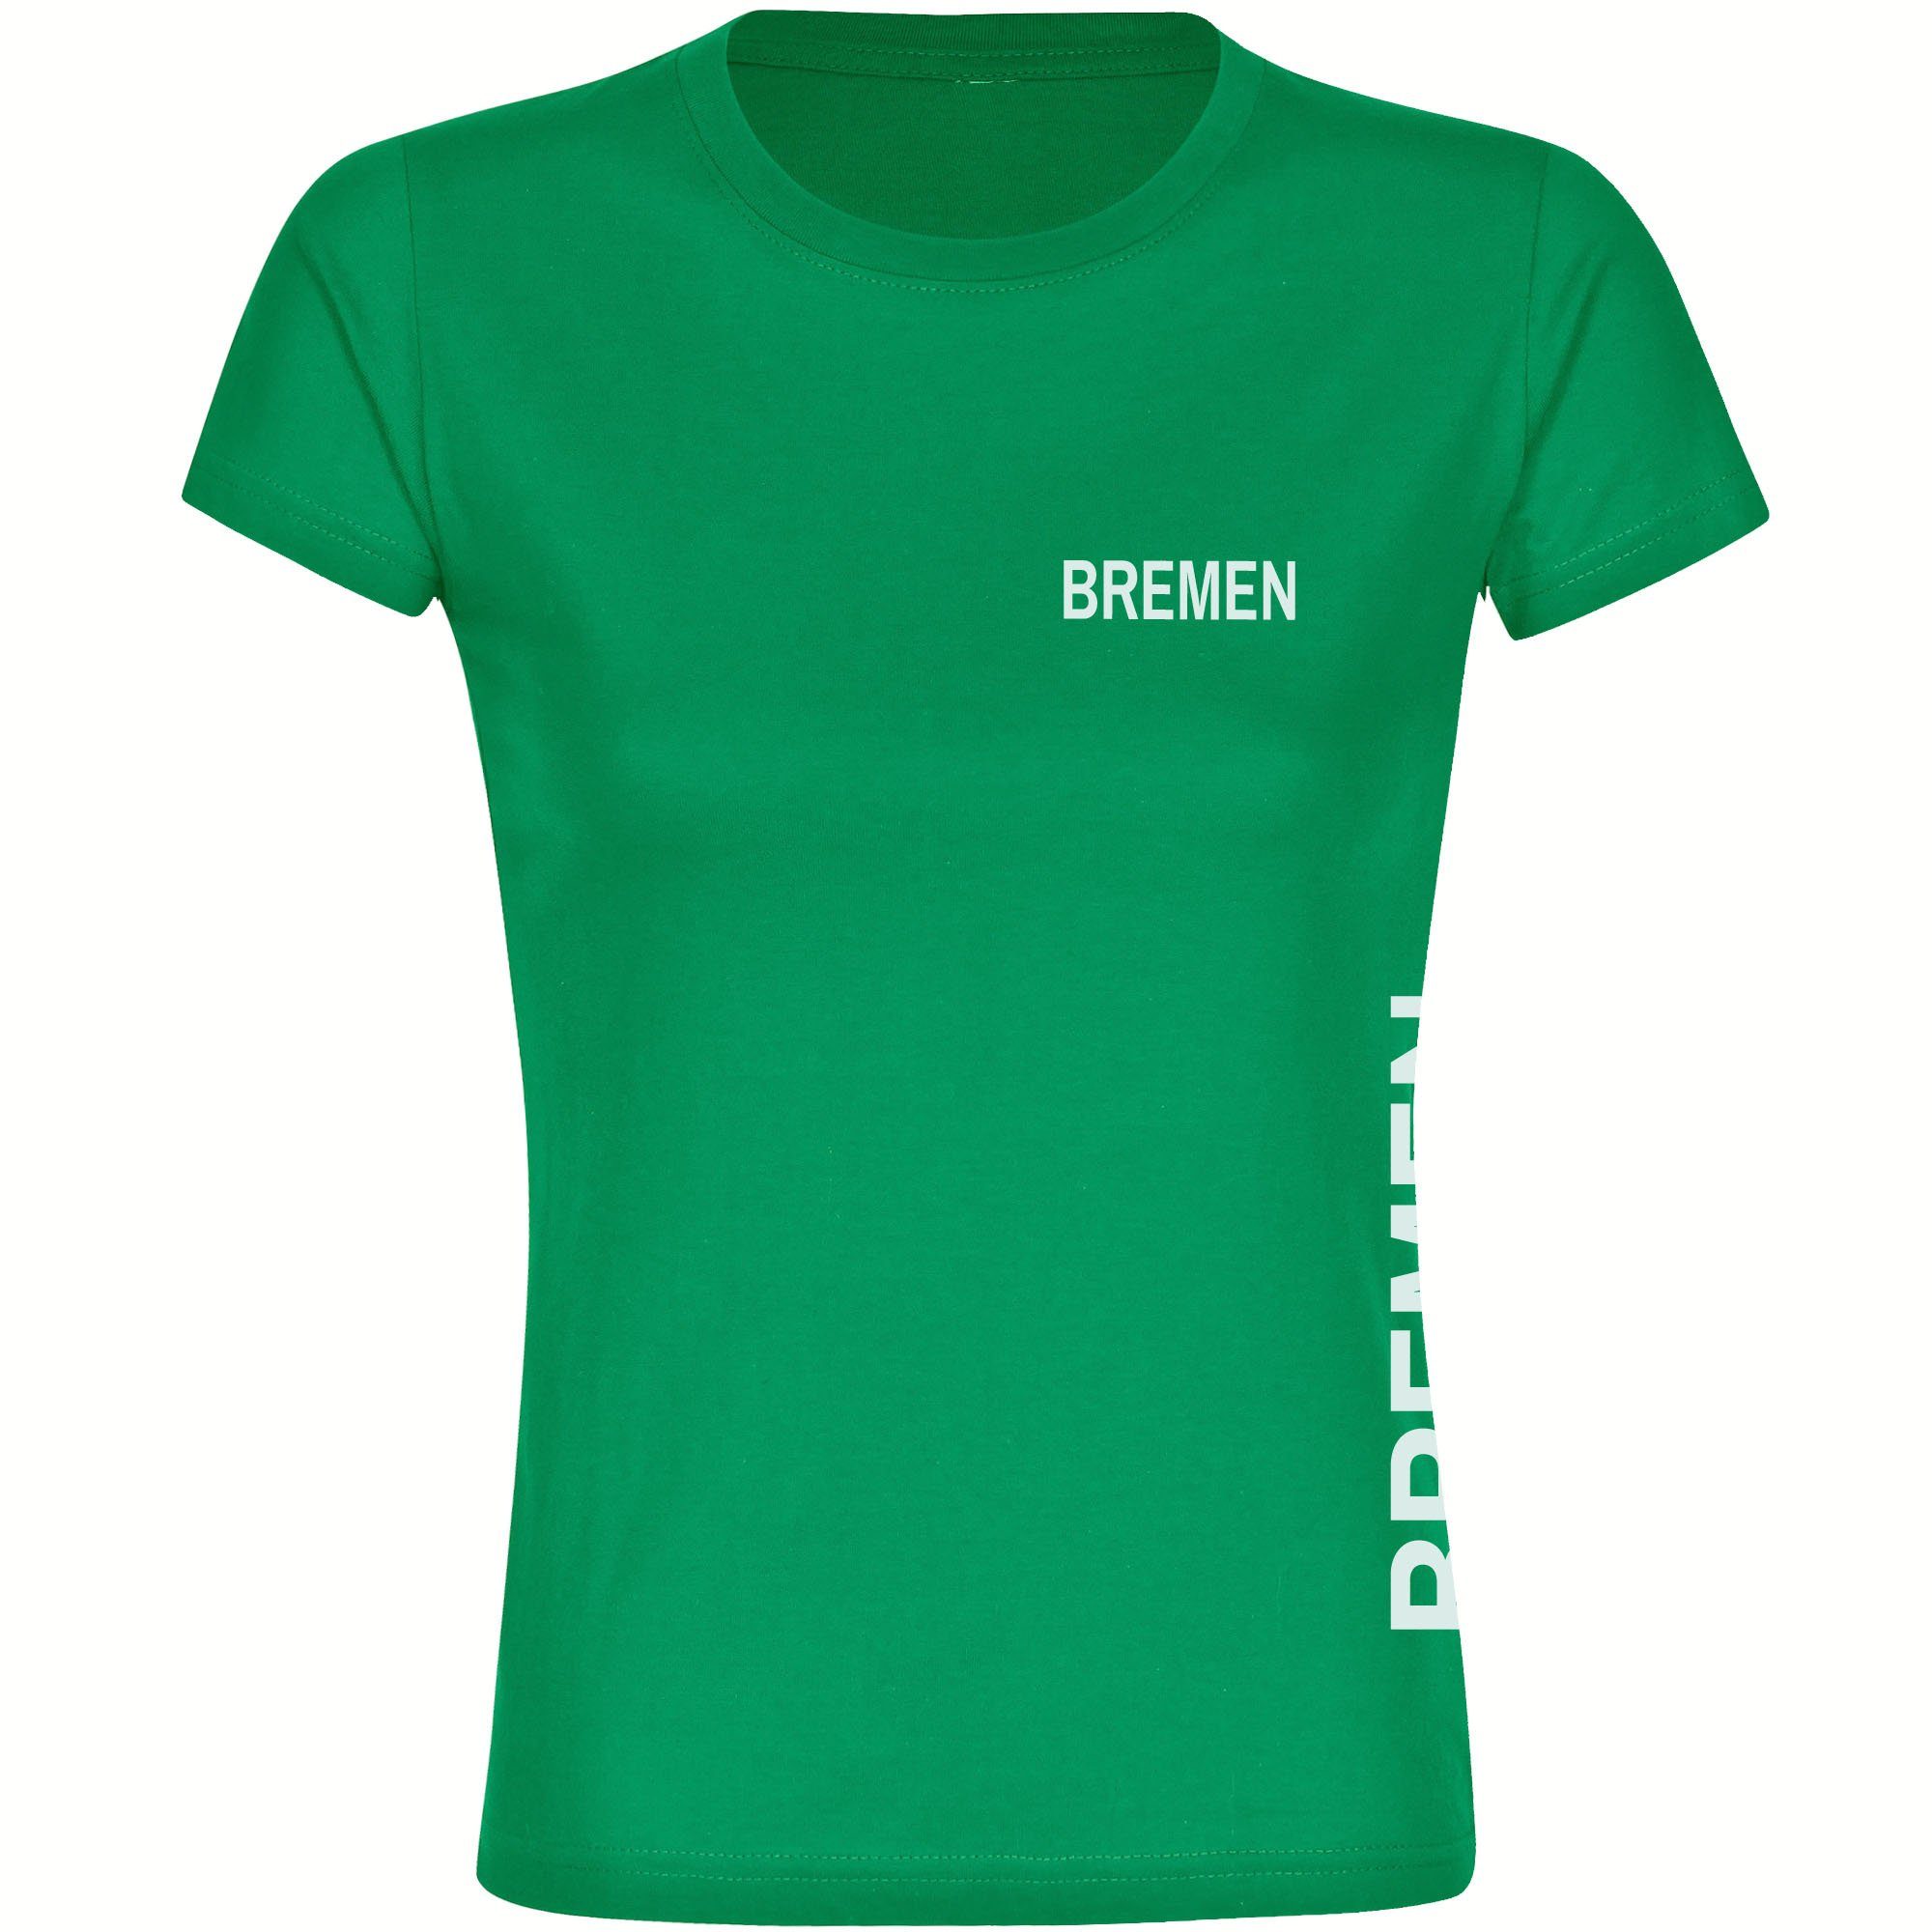 multifanshop T-Shirt Damen Bremen - Brust & Seite - Frauen